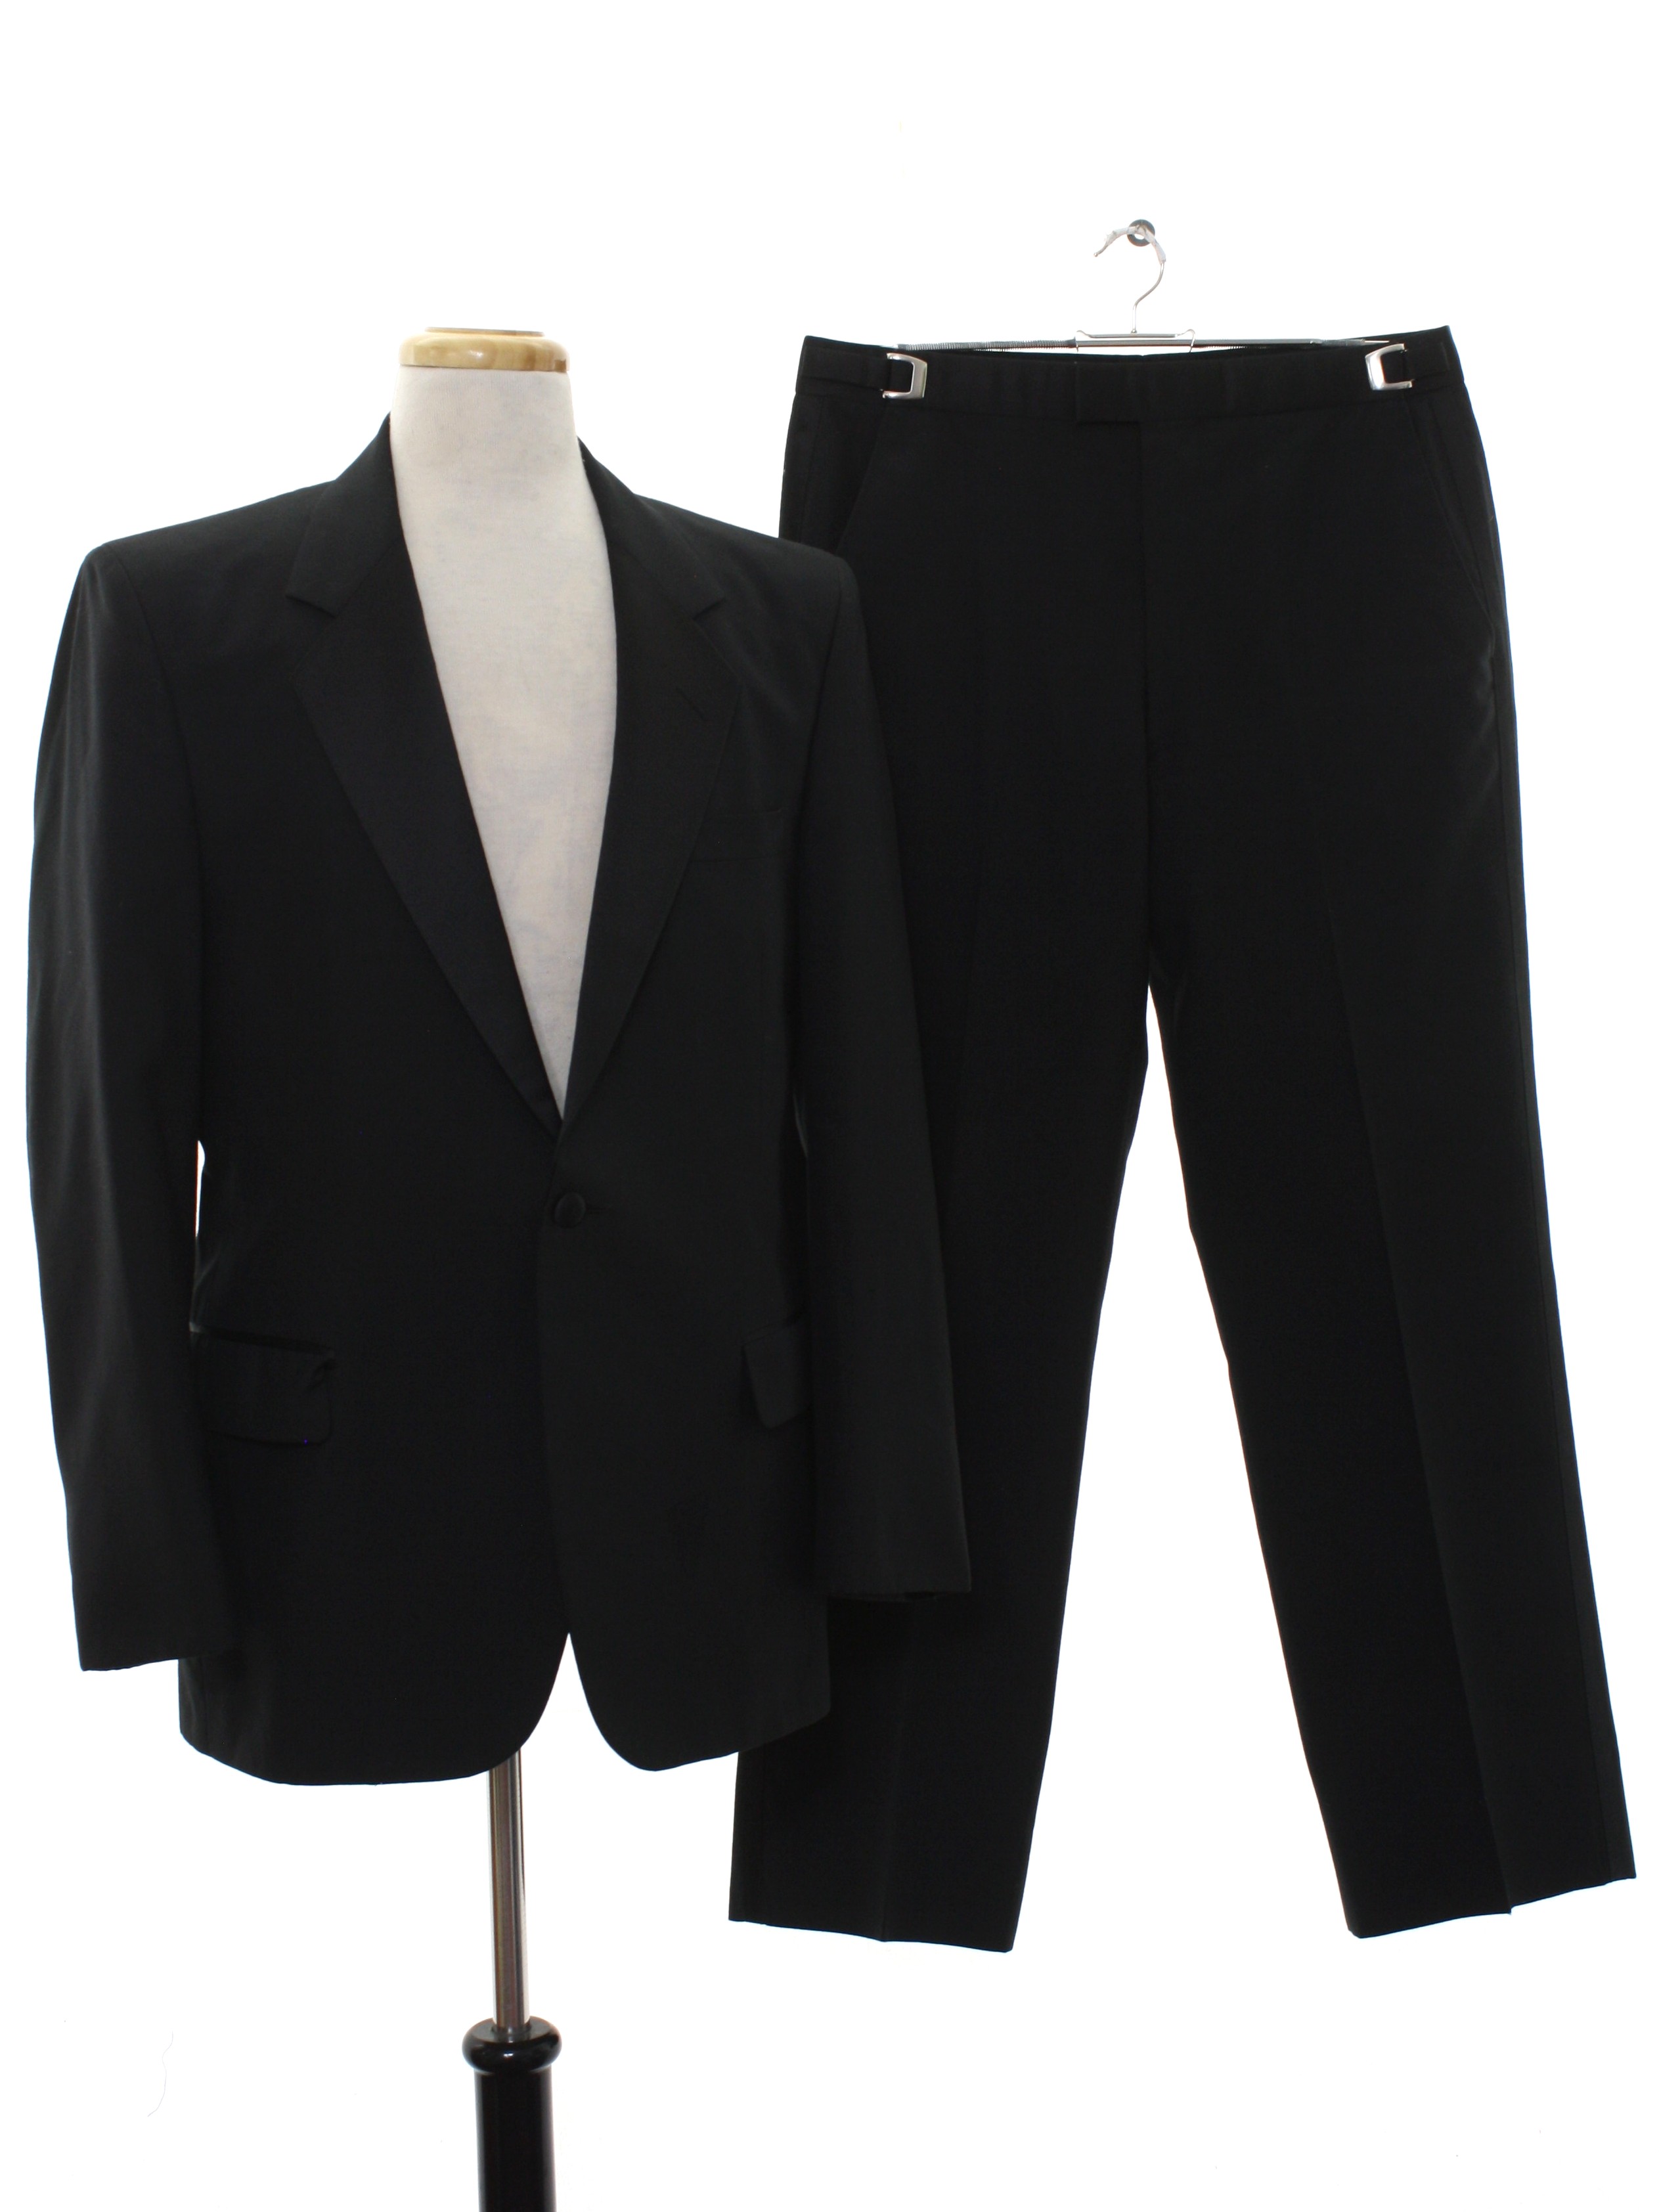 Vintage 80s Men's Black Tuxedo Suit Coat Slacks 